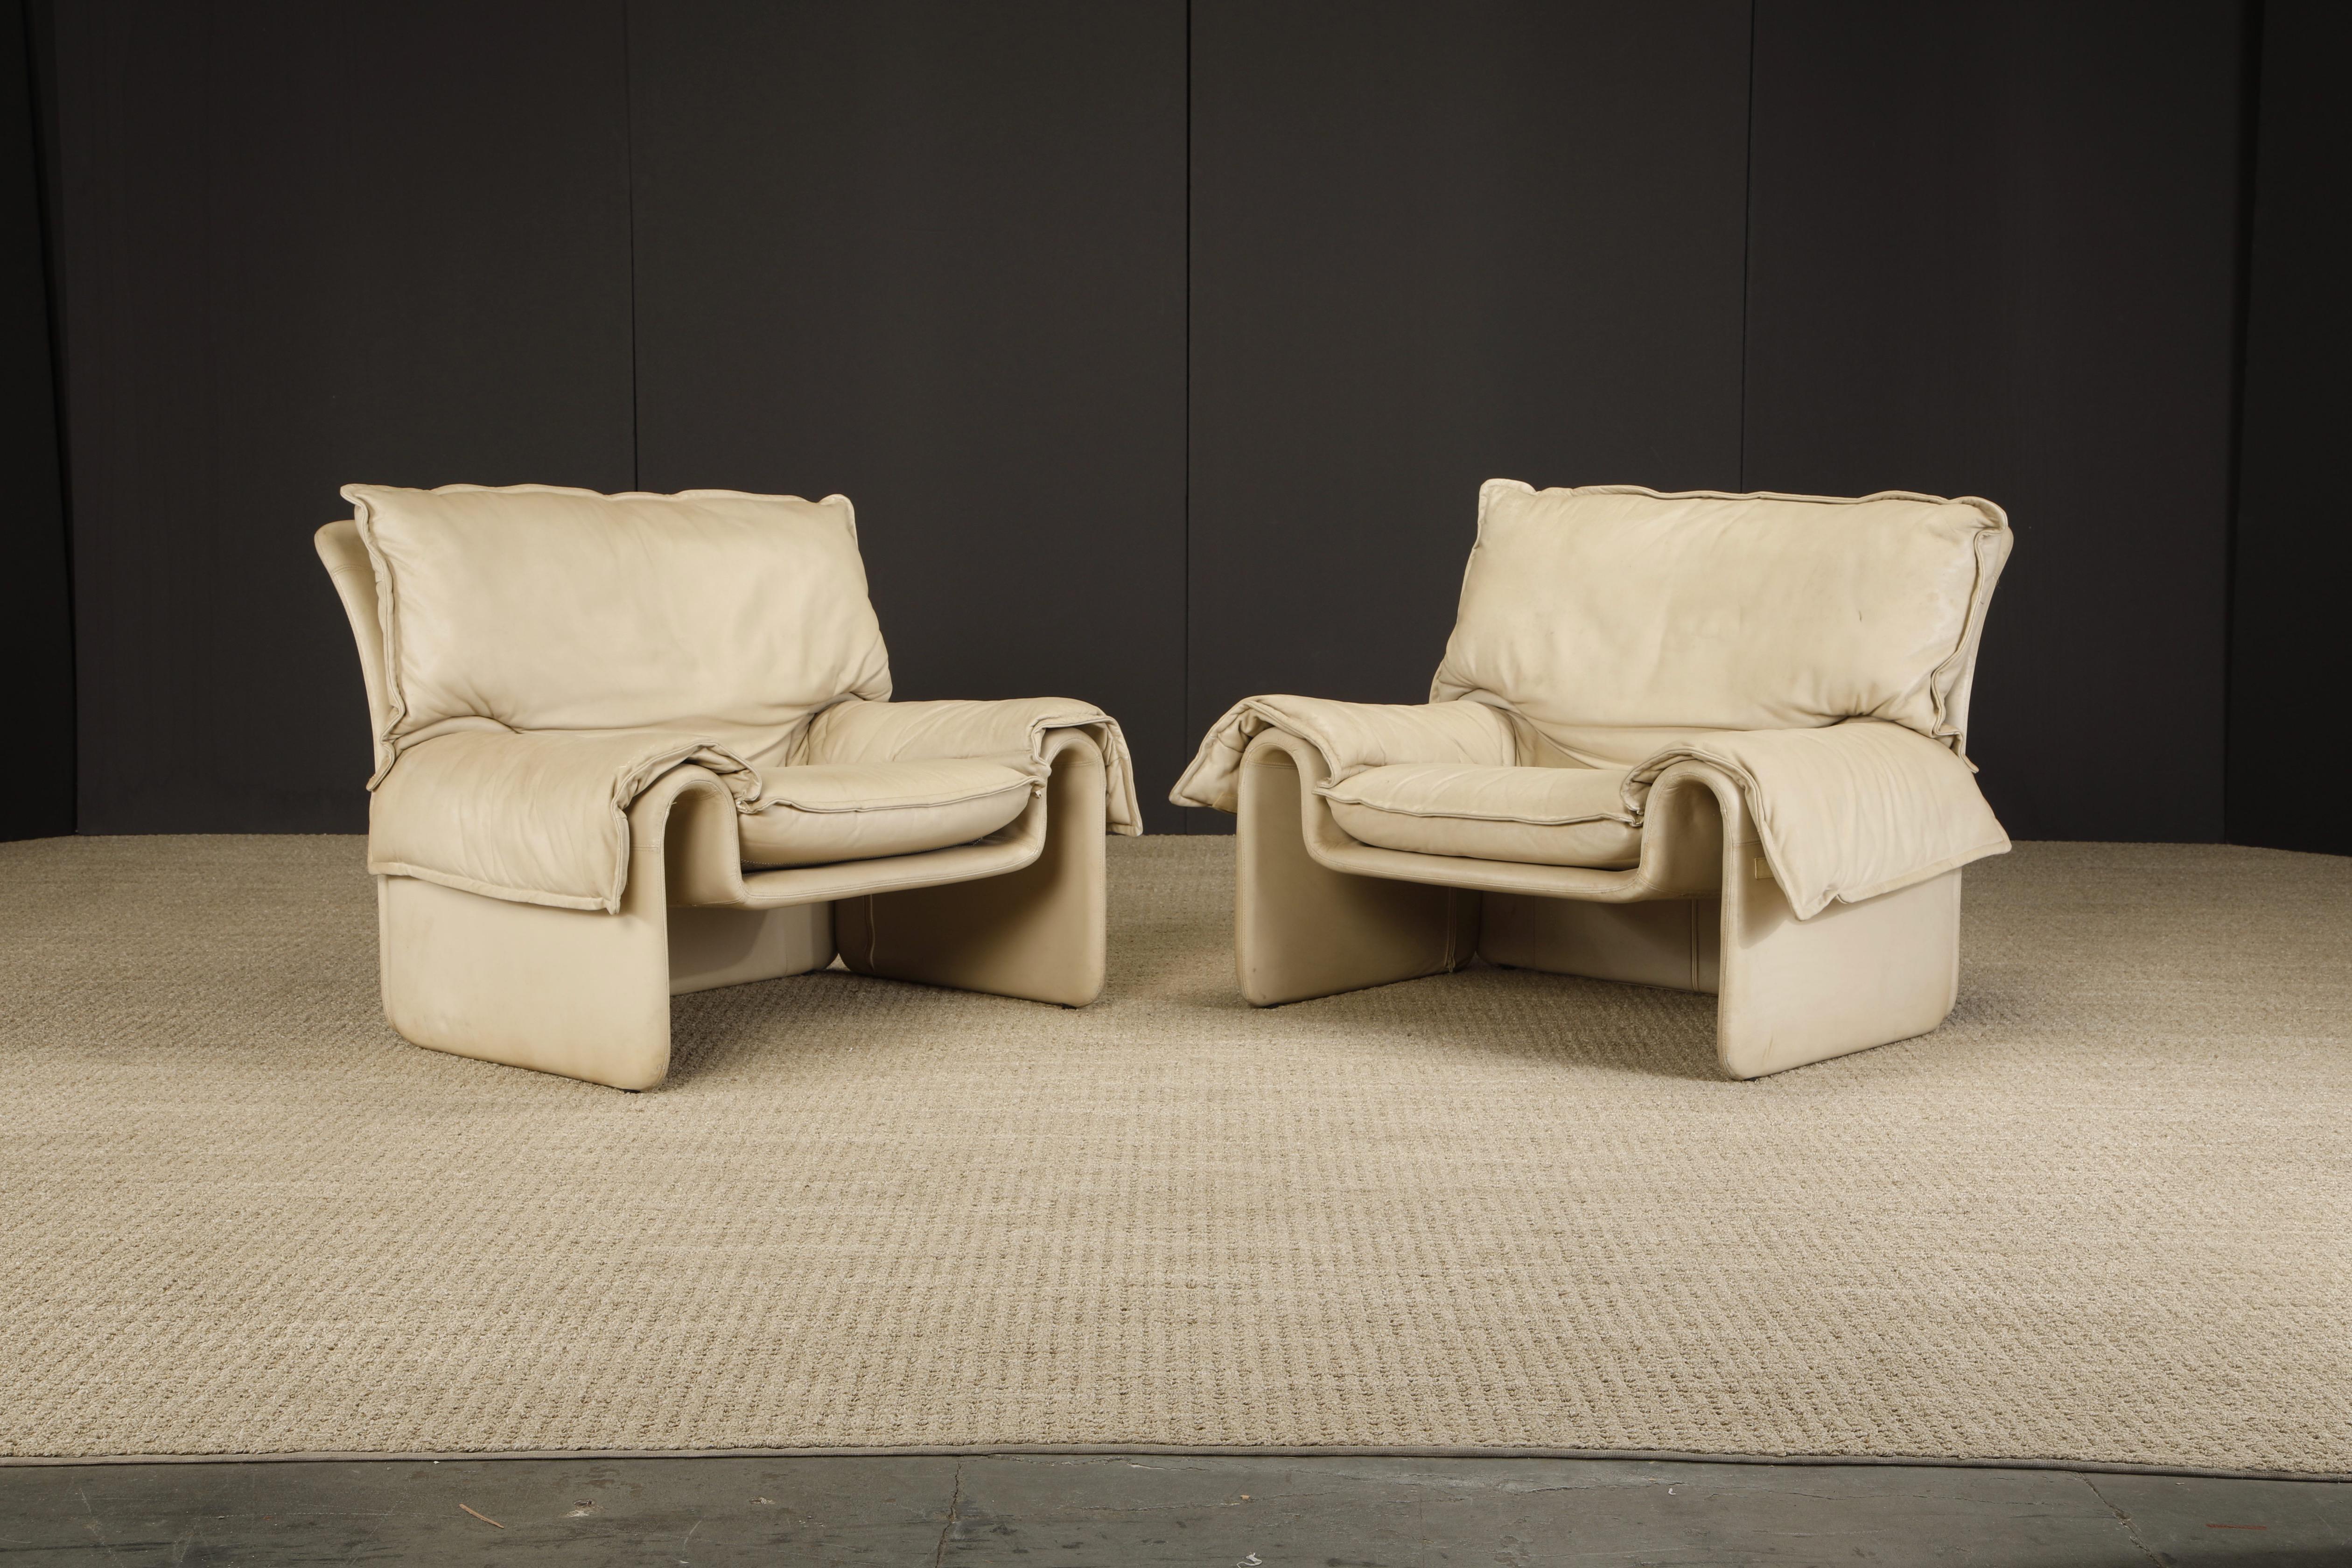 Une magnifique paire de chaises longues en cuir blanc cassé, créée par l'illustre architecte et designer Guido Faleschini pour i4 Mariani, Italie. Conçue dans les années 1970, cette paire de chaises longues en cuir souple et confortable est signée